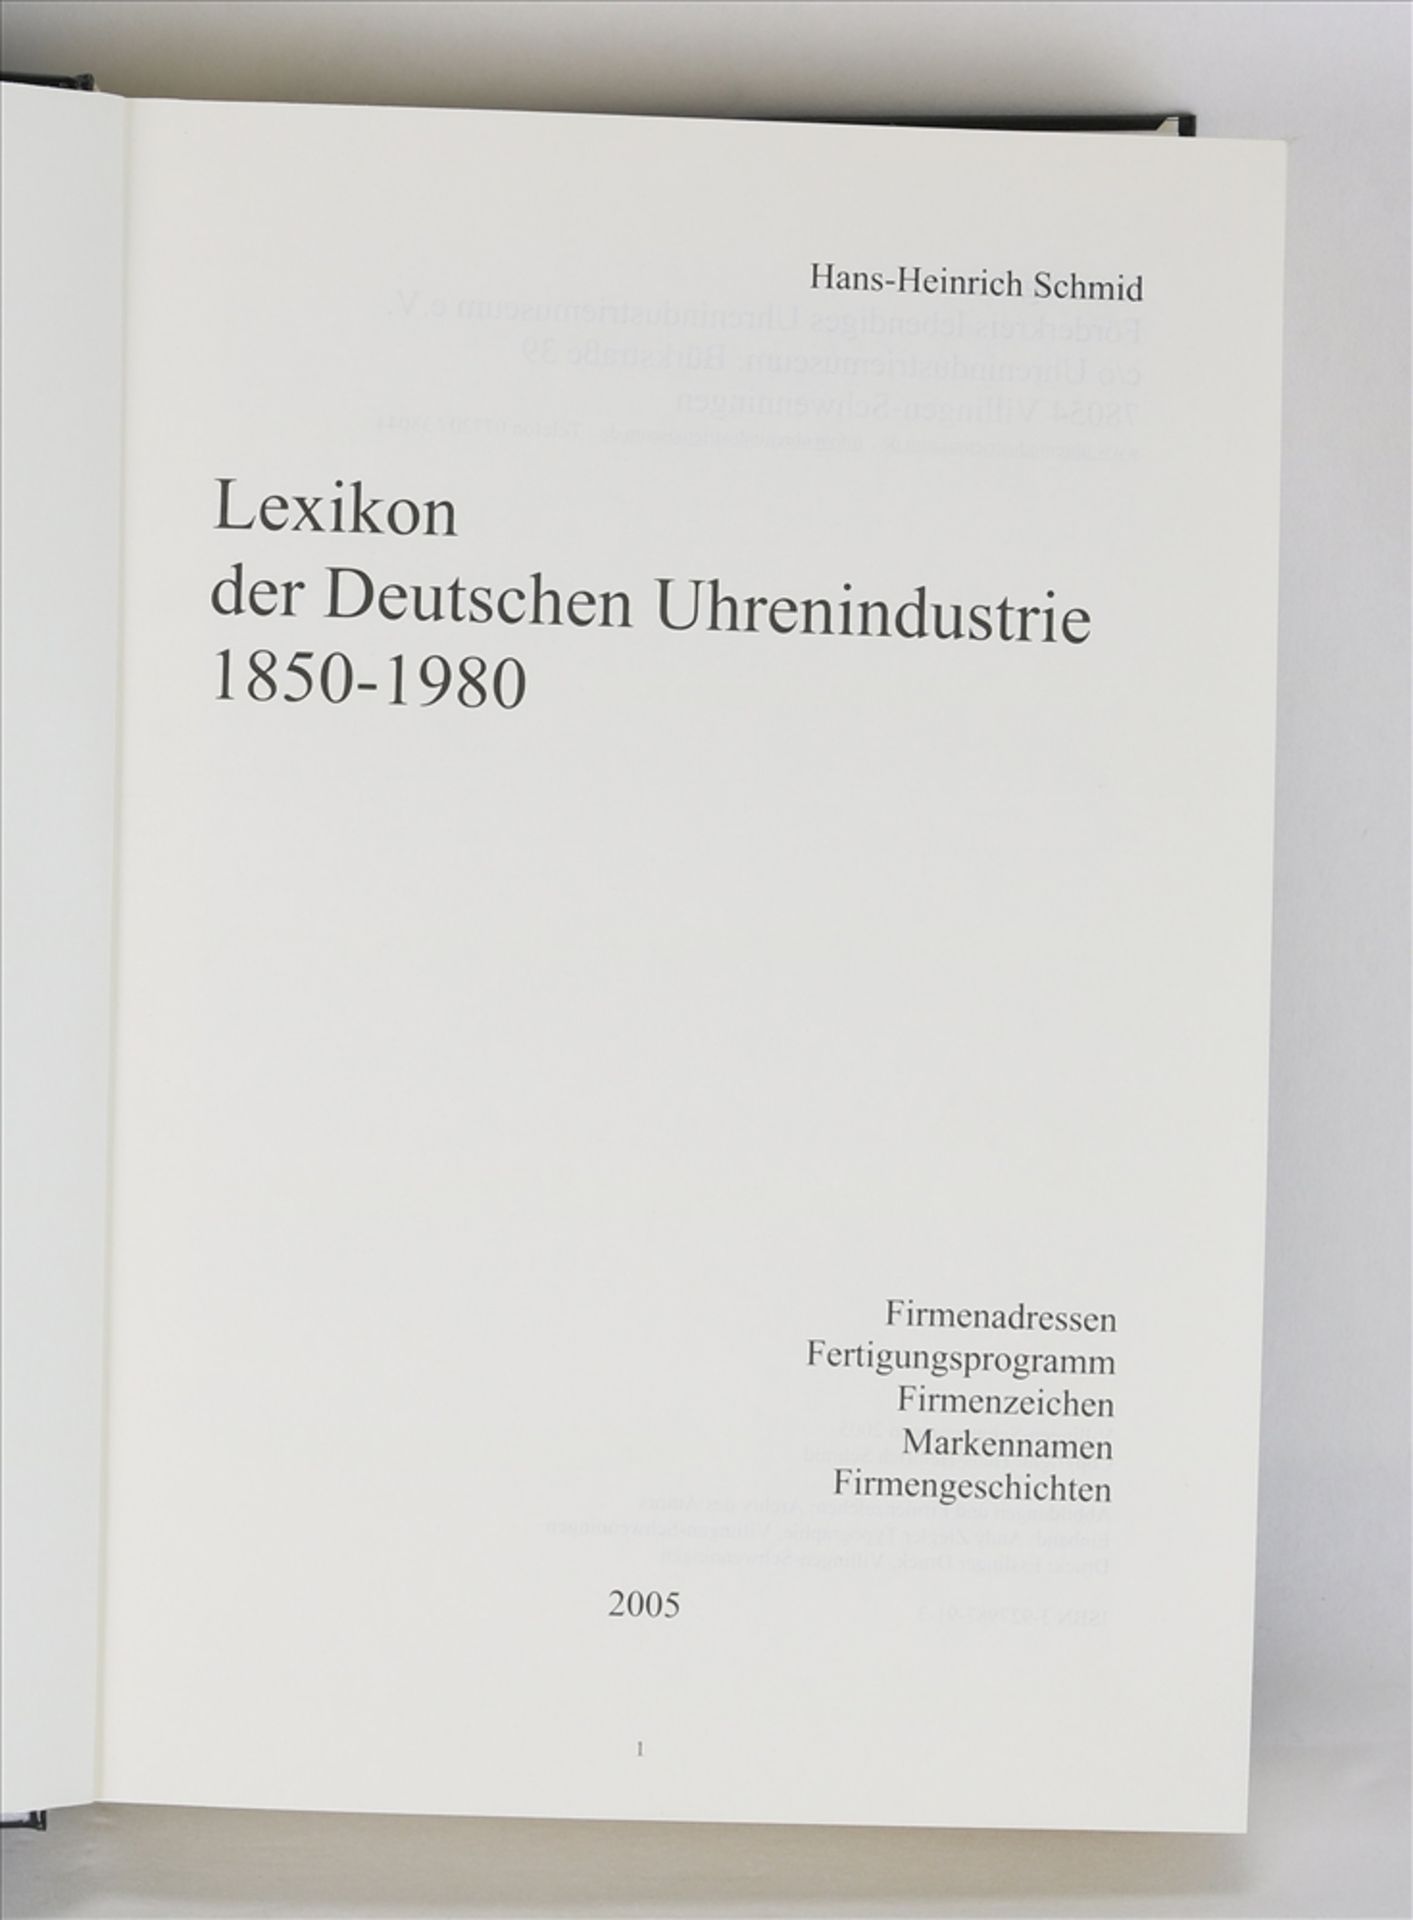 Lexikon der Deutschen Uhrenindustrie 1850-1980 Autor: Hans-Heinrich Schmid. Förderkreis lebendiges - Image 2 of 3